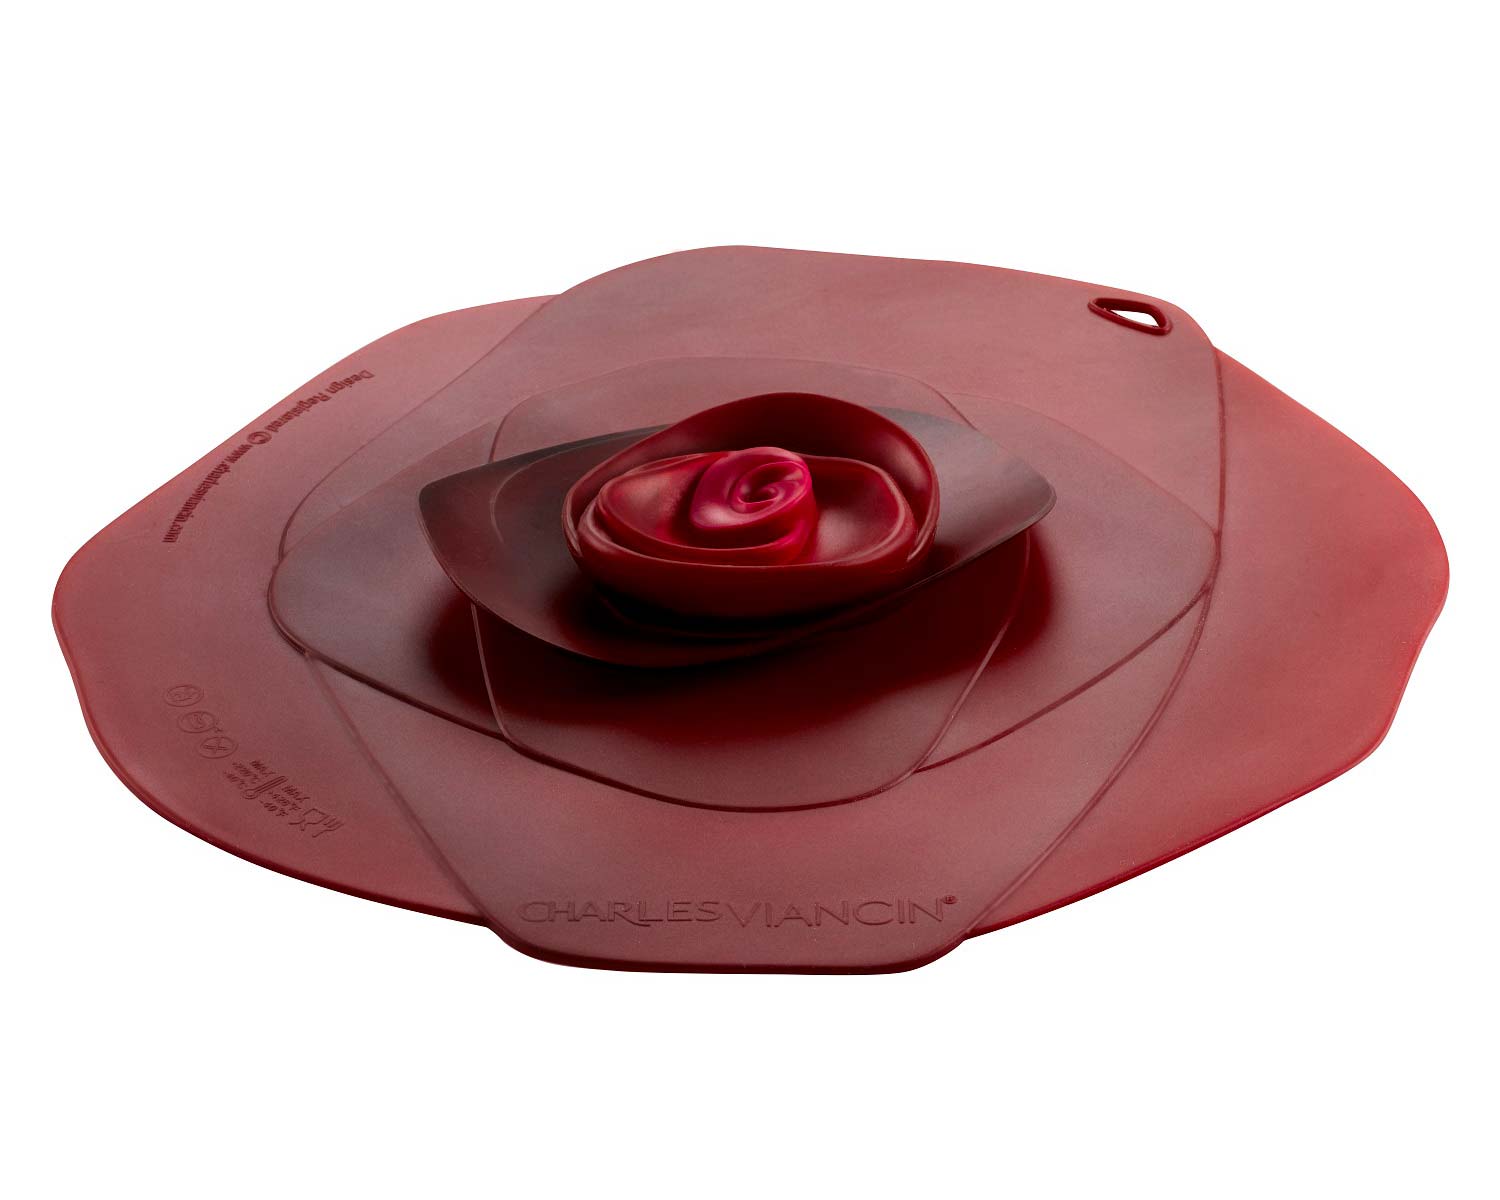 Charles Viancin Lids - Rose Range - this is the medium lid in Dark Red